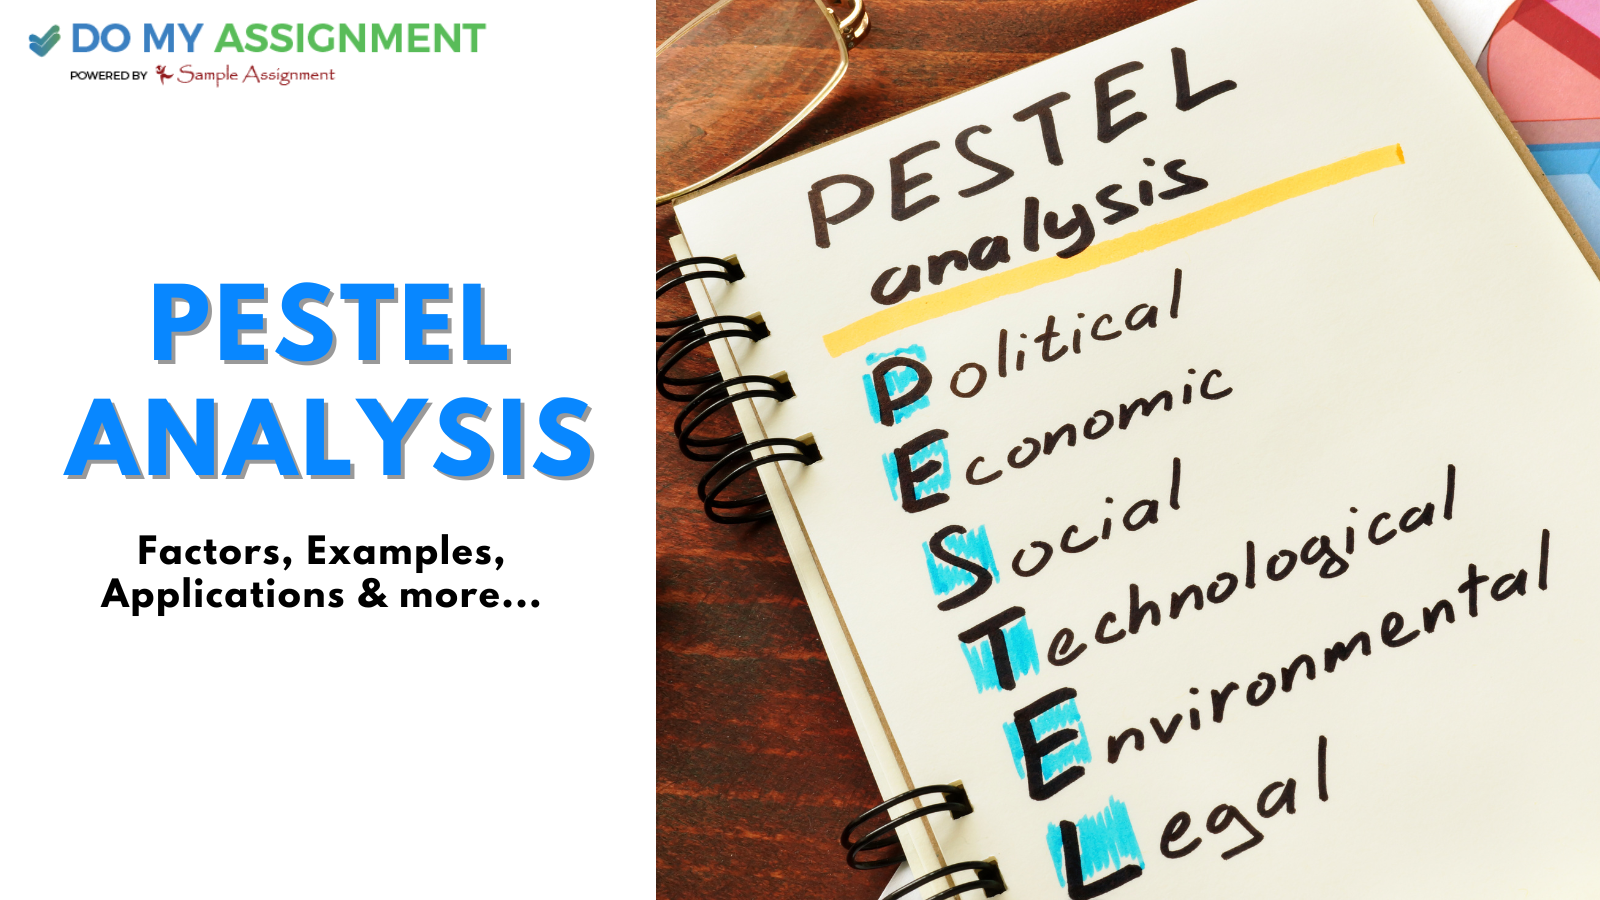 PESTEL Analysis